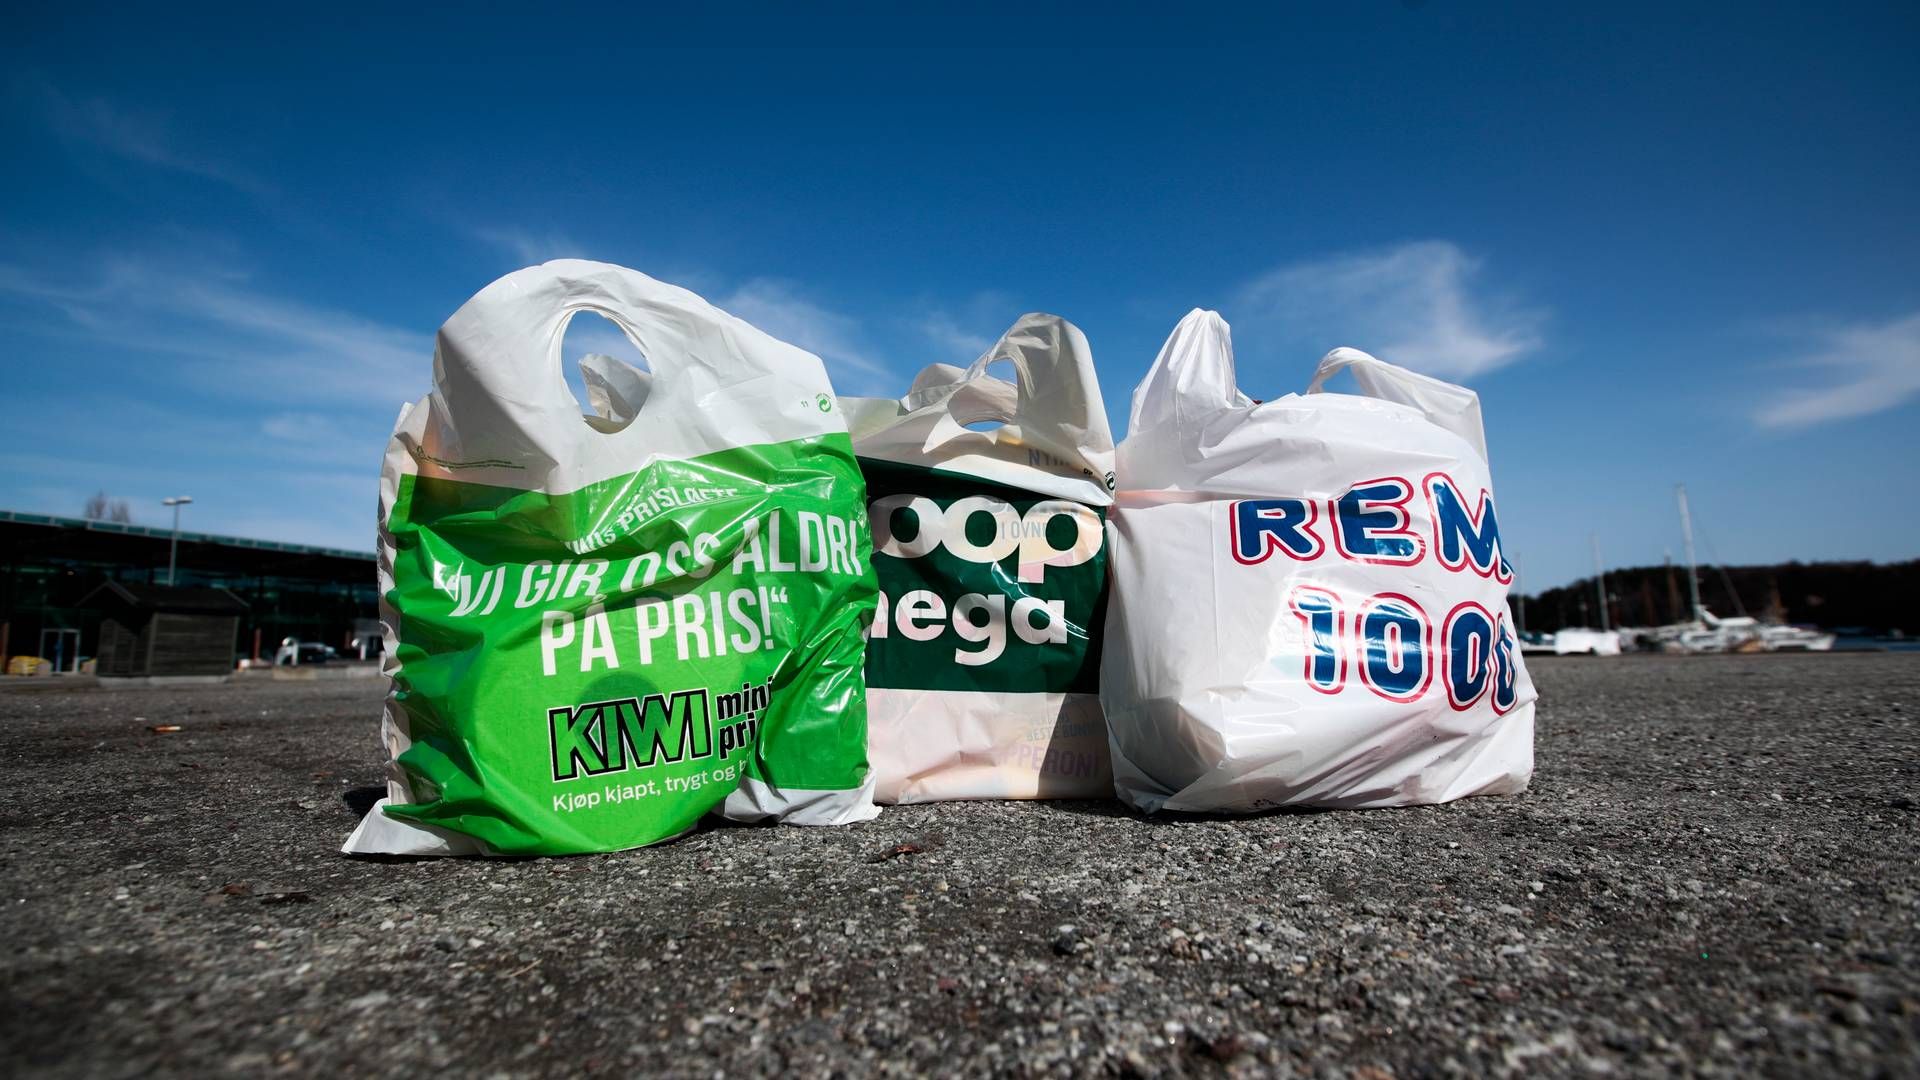 ØKT PRIS: Det er opp til butikkene selv om de vil øke prisen på plastposen eller ikke. | Foto: Lise Åserud/NTB